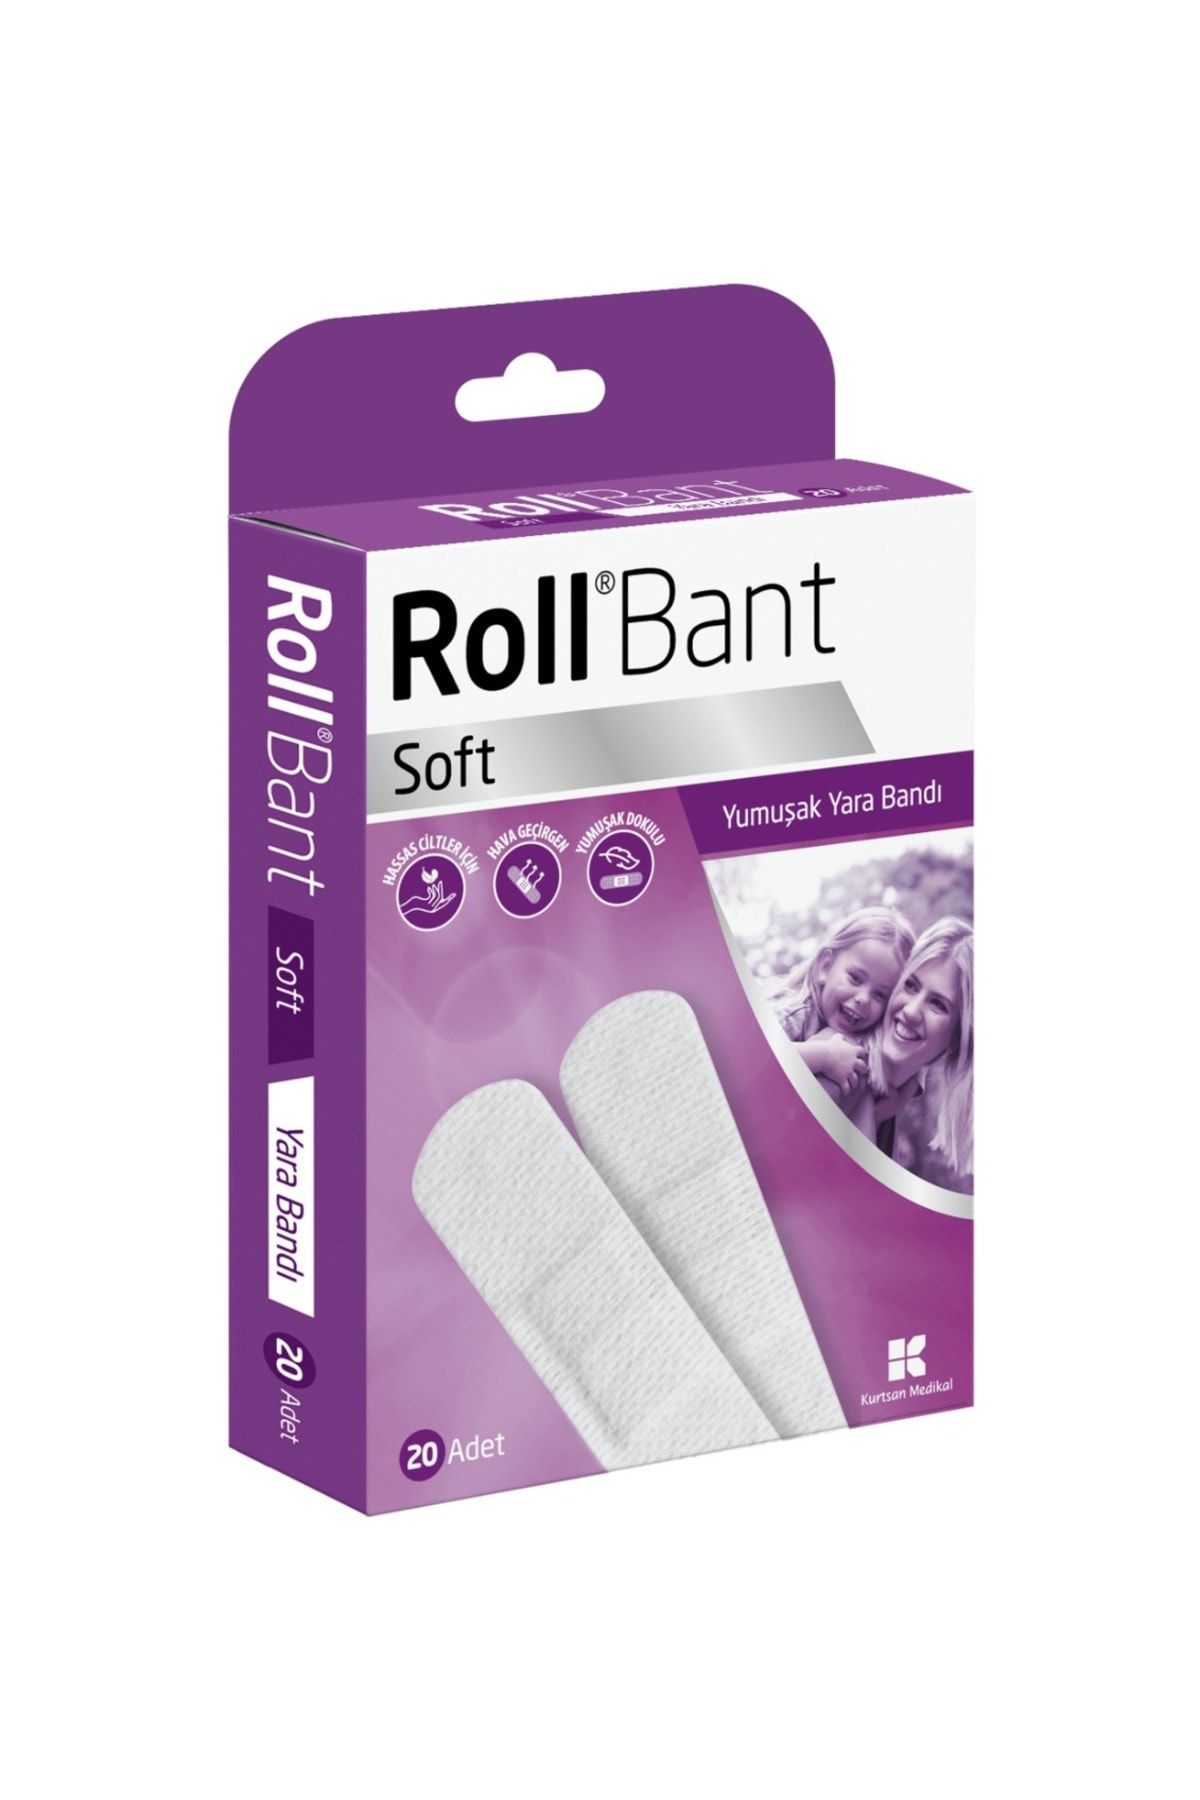 Roll Bant Soft Yumuşak Yara Bandı 20'li - 4 Kutu